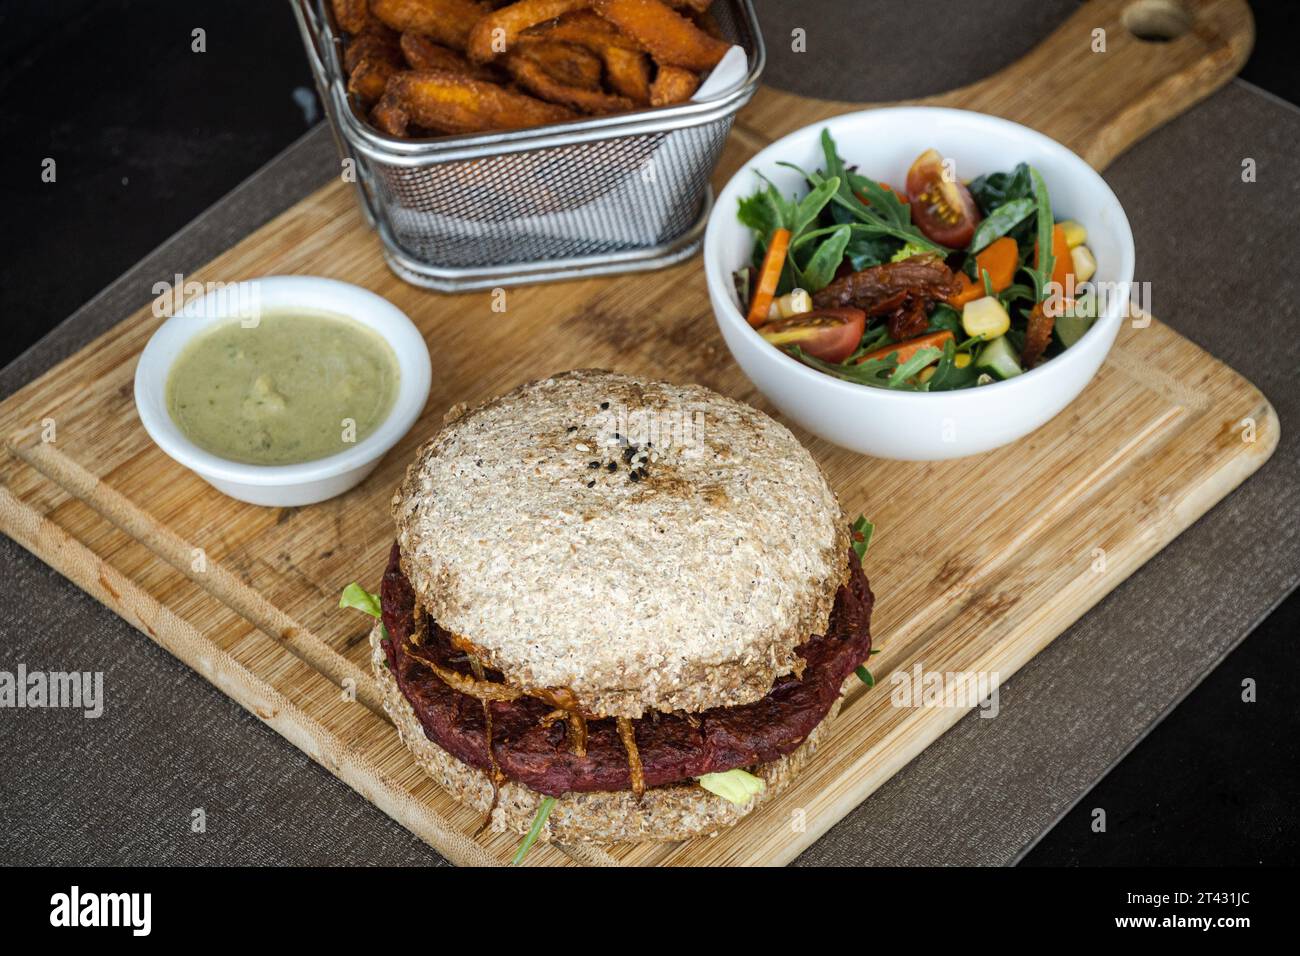 Nahaufnahme eines Rote-Bete-Bohnen-Burgers mit Süßkartoffelfritten, Salat und Dippsoße Stockfoto